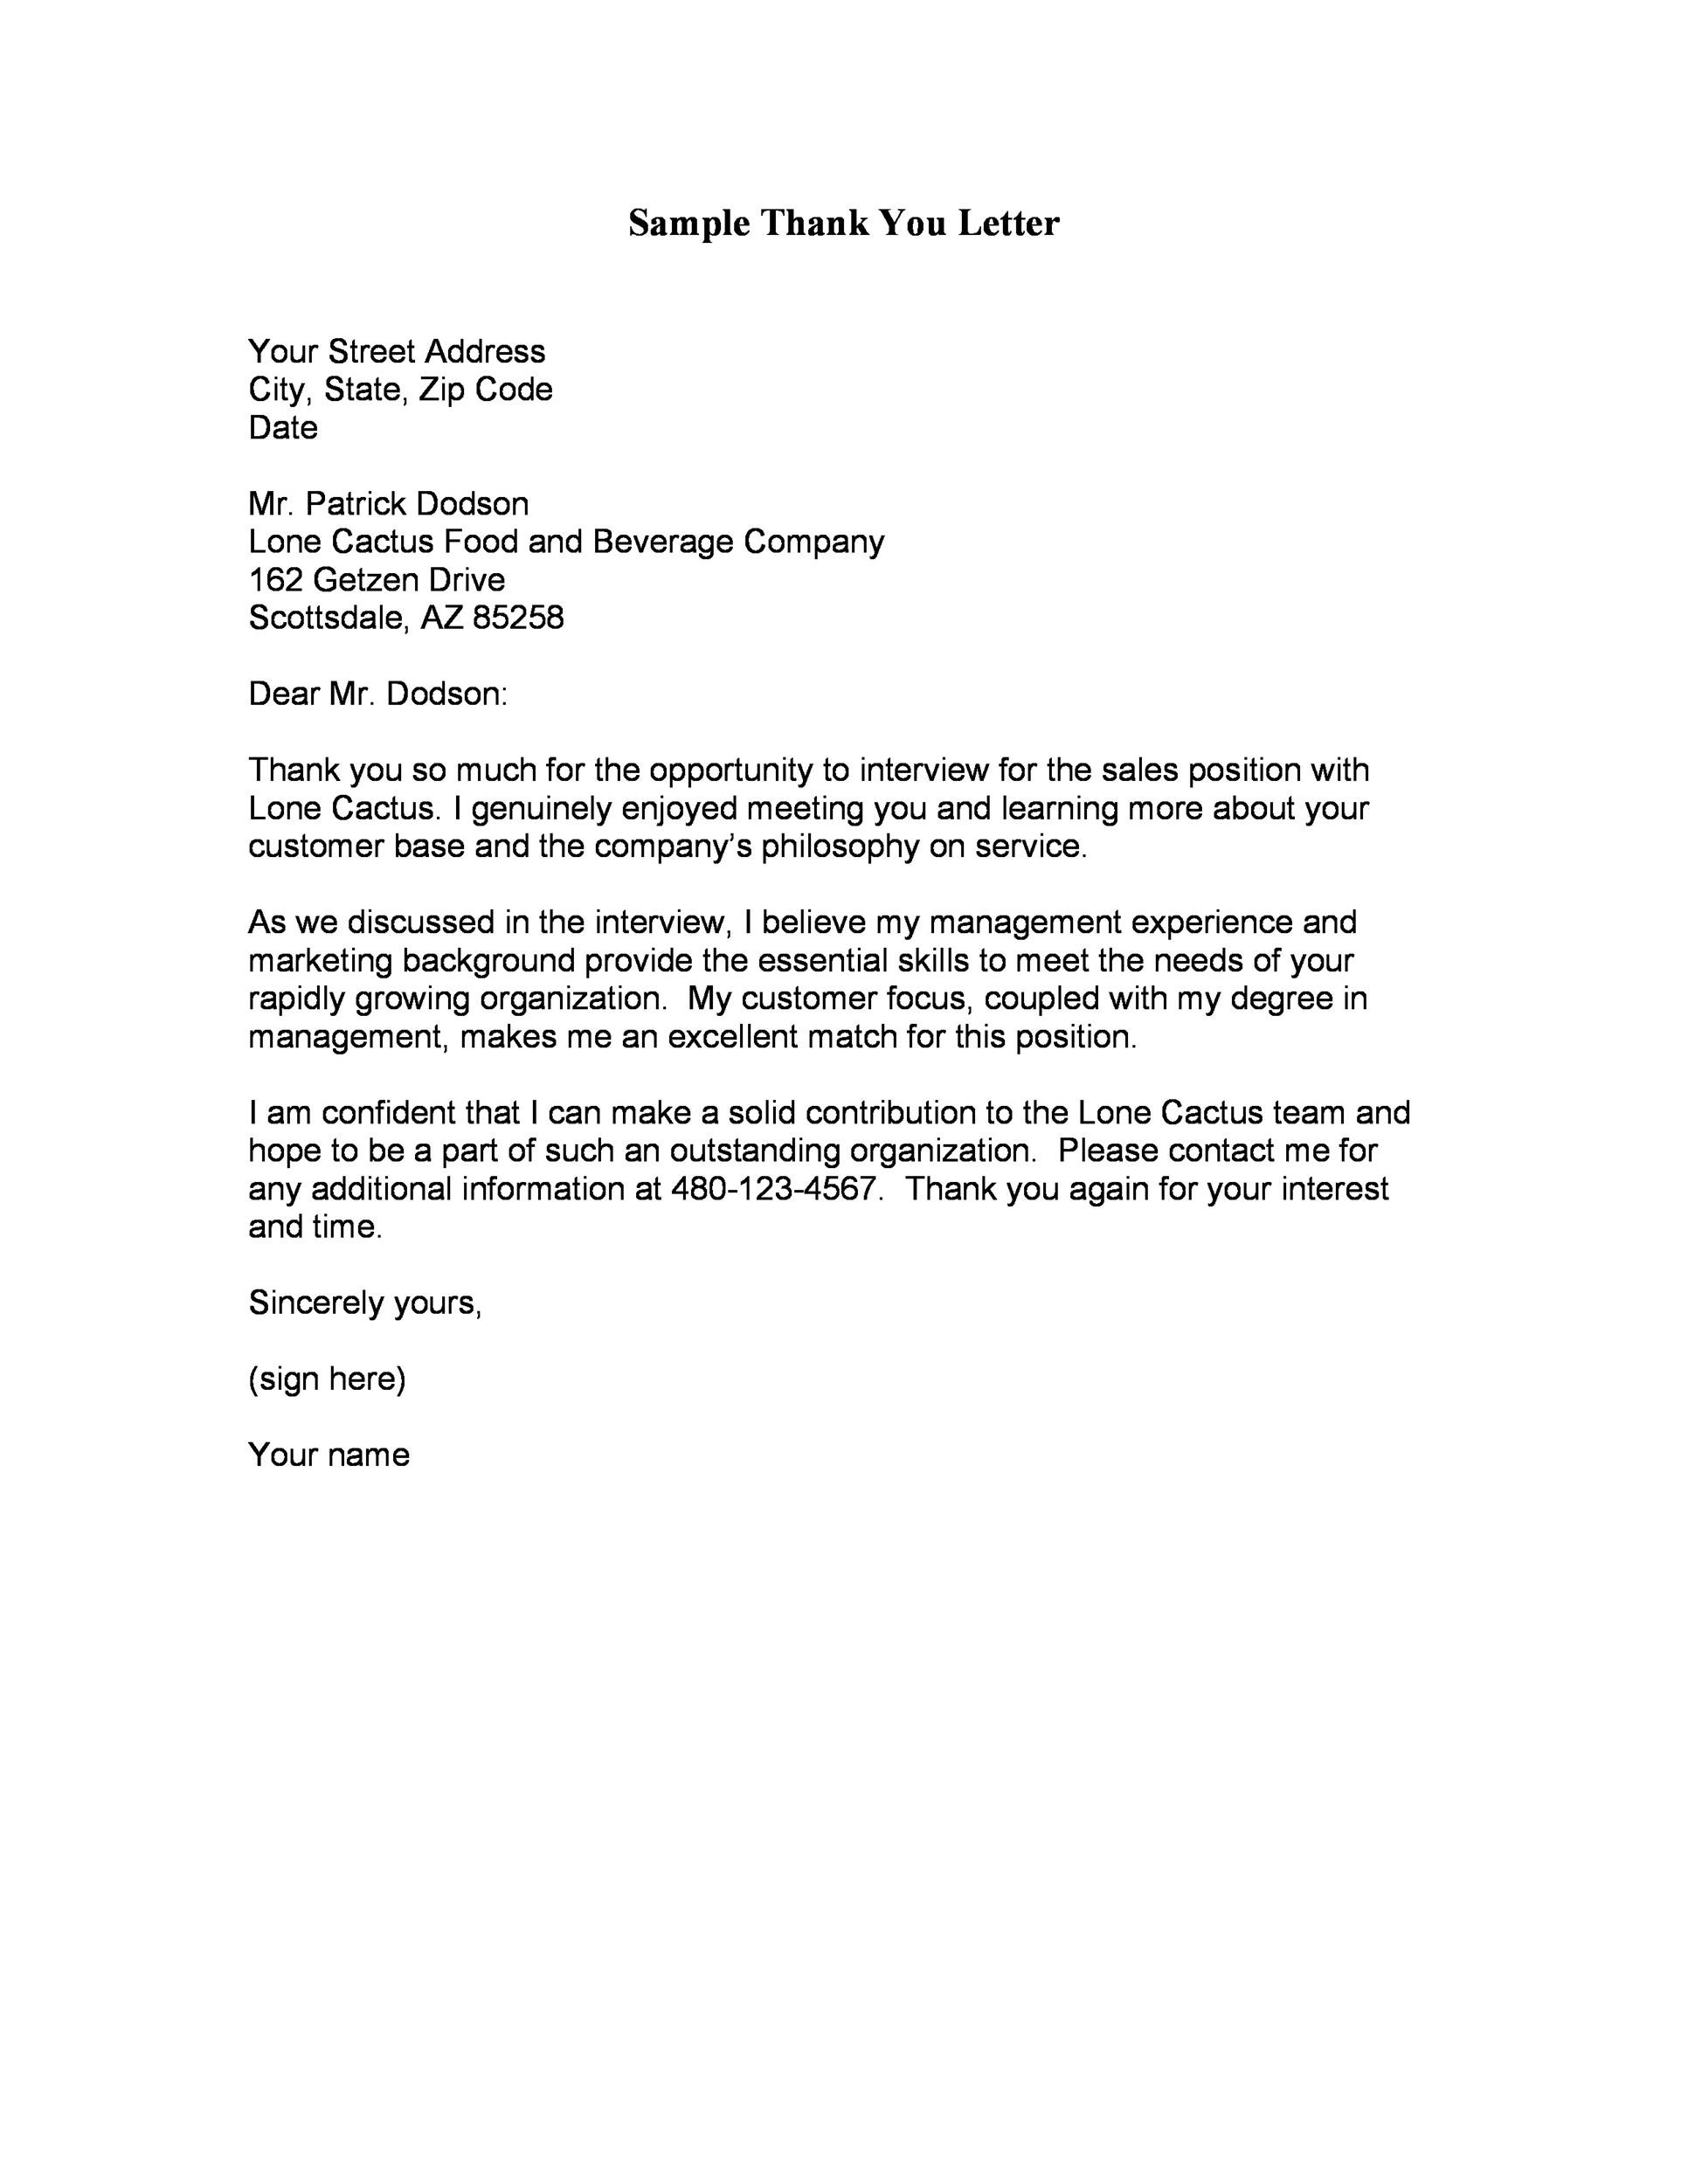 Customer Service Appreciation Letter from templatelab.com